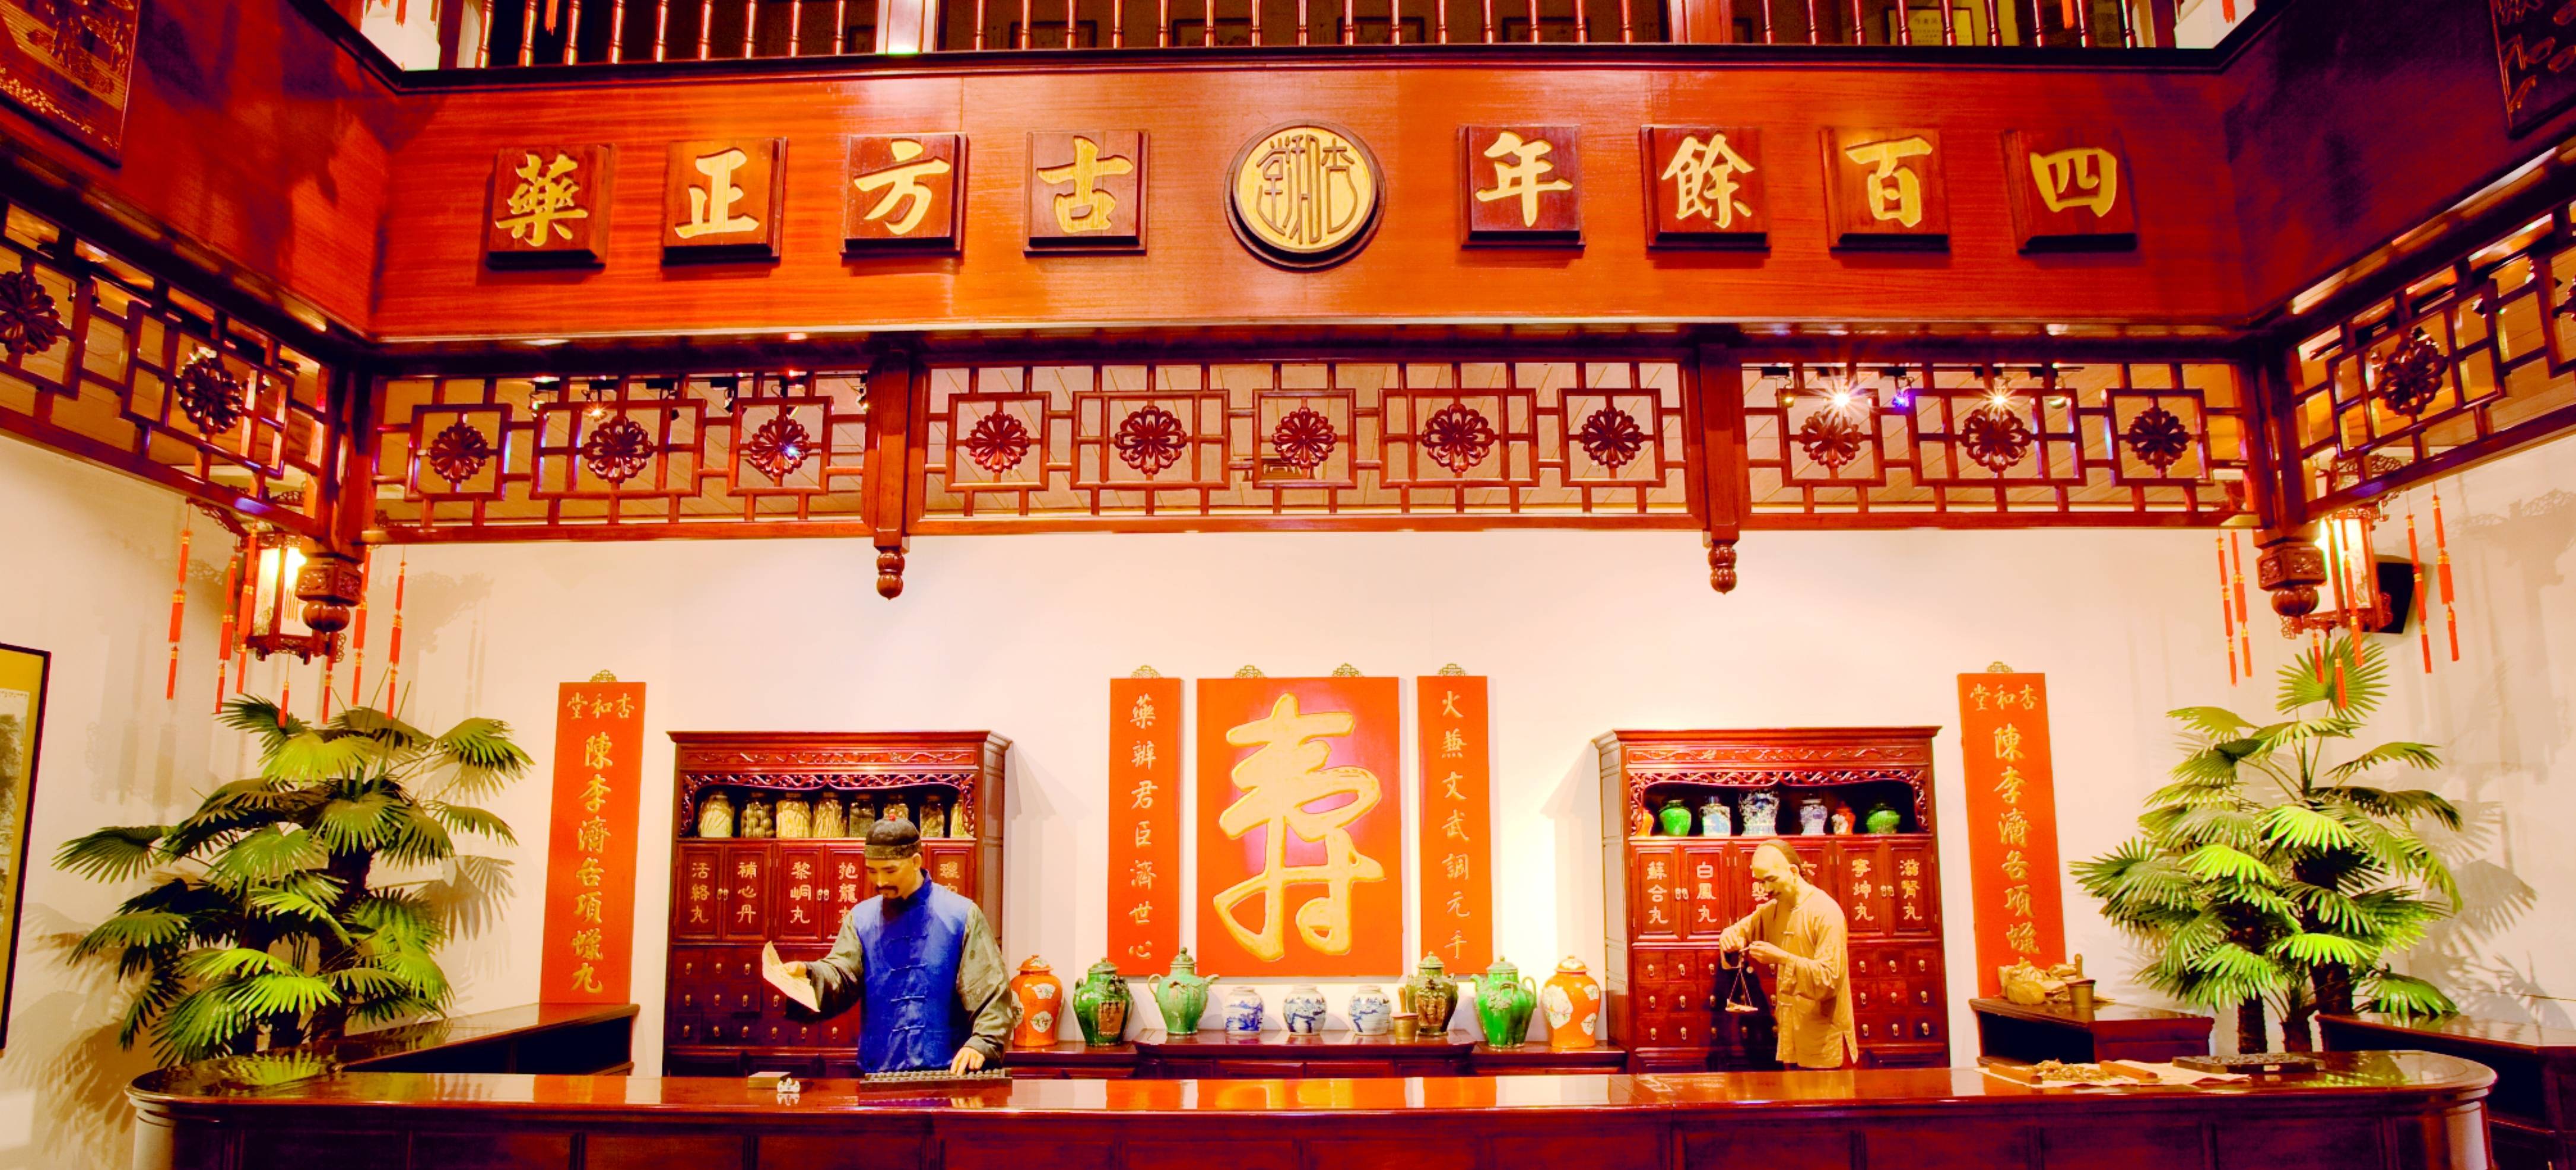 陈李济中药博物馆作为最早一批试水开办博物馆的老字号,陈李济于2004